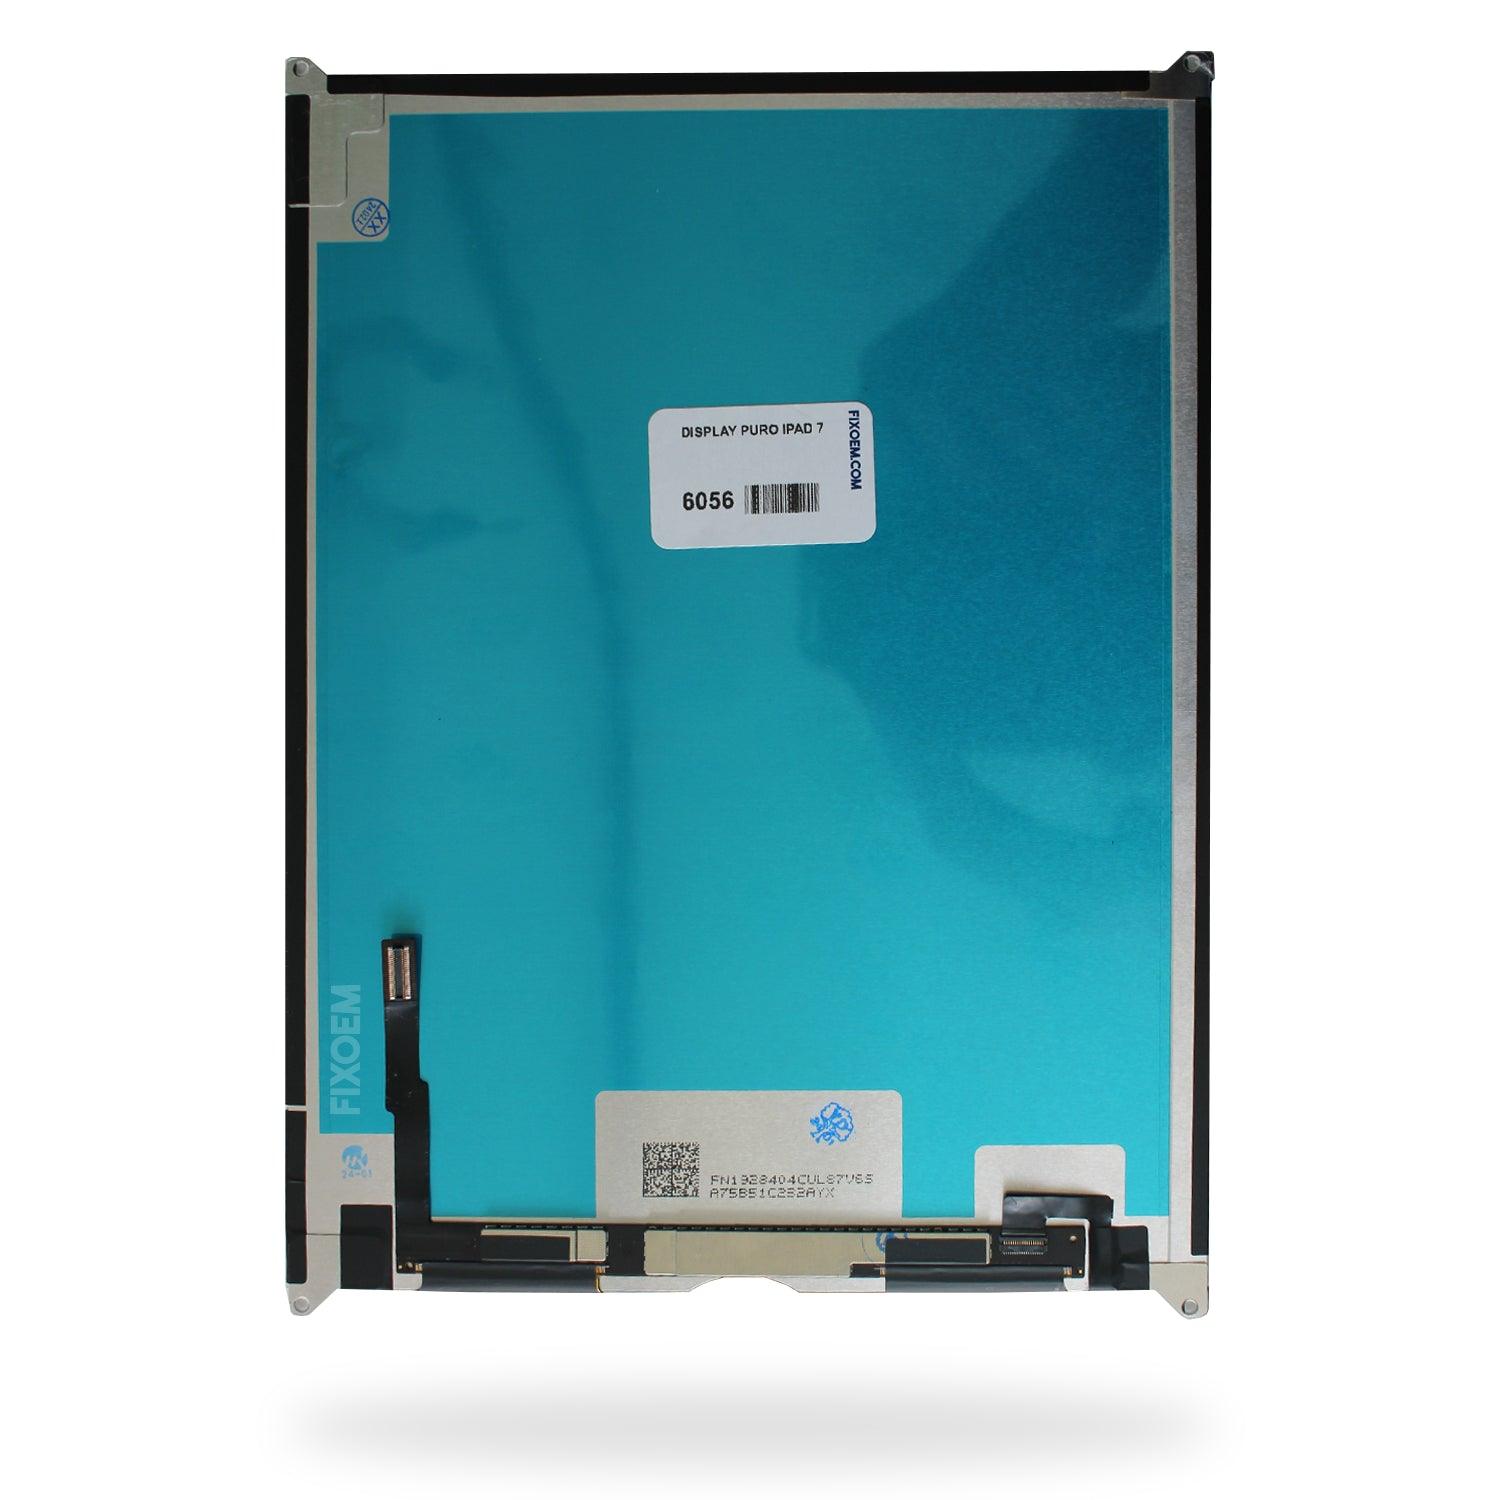 Display Puro iPad 7 A2197 / iPad 8 A2270 / Ipad 9 |+2,000 reseñas 4.8/5 ⭐